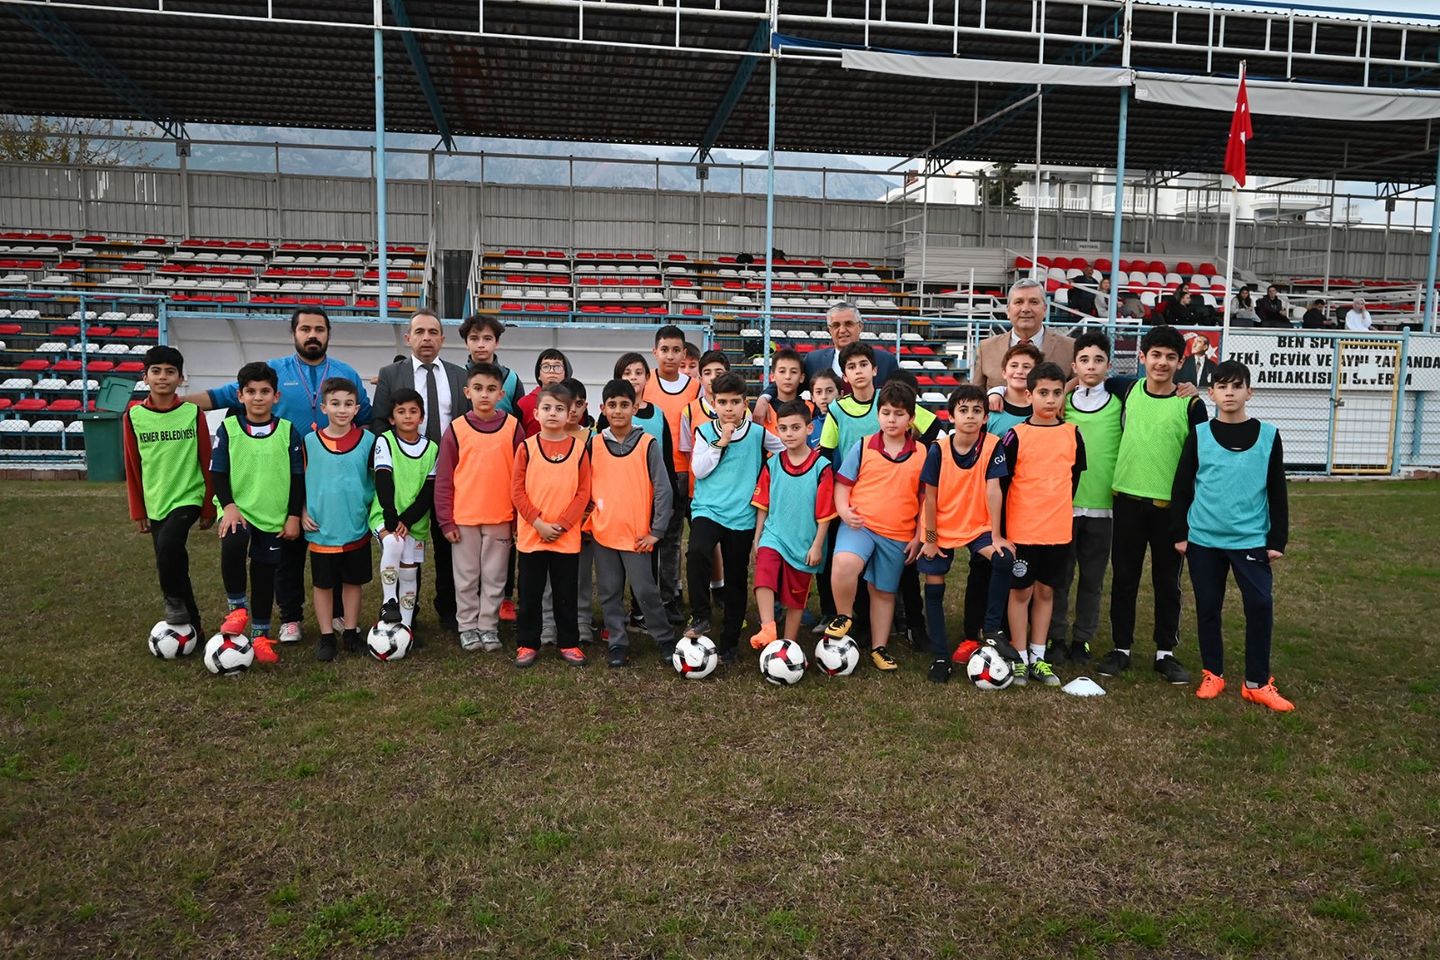 Kemer Belediye Başkanı, genç futbolcuları ziyaret ederek altyapıya yatırım yapma ve genç yetenekleri keşfetme hedefini gösterdi.